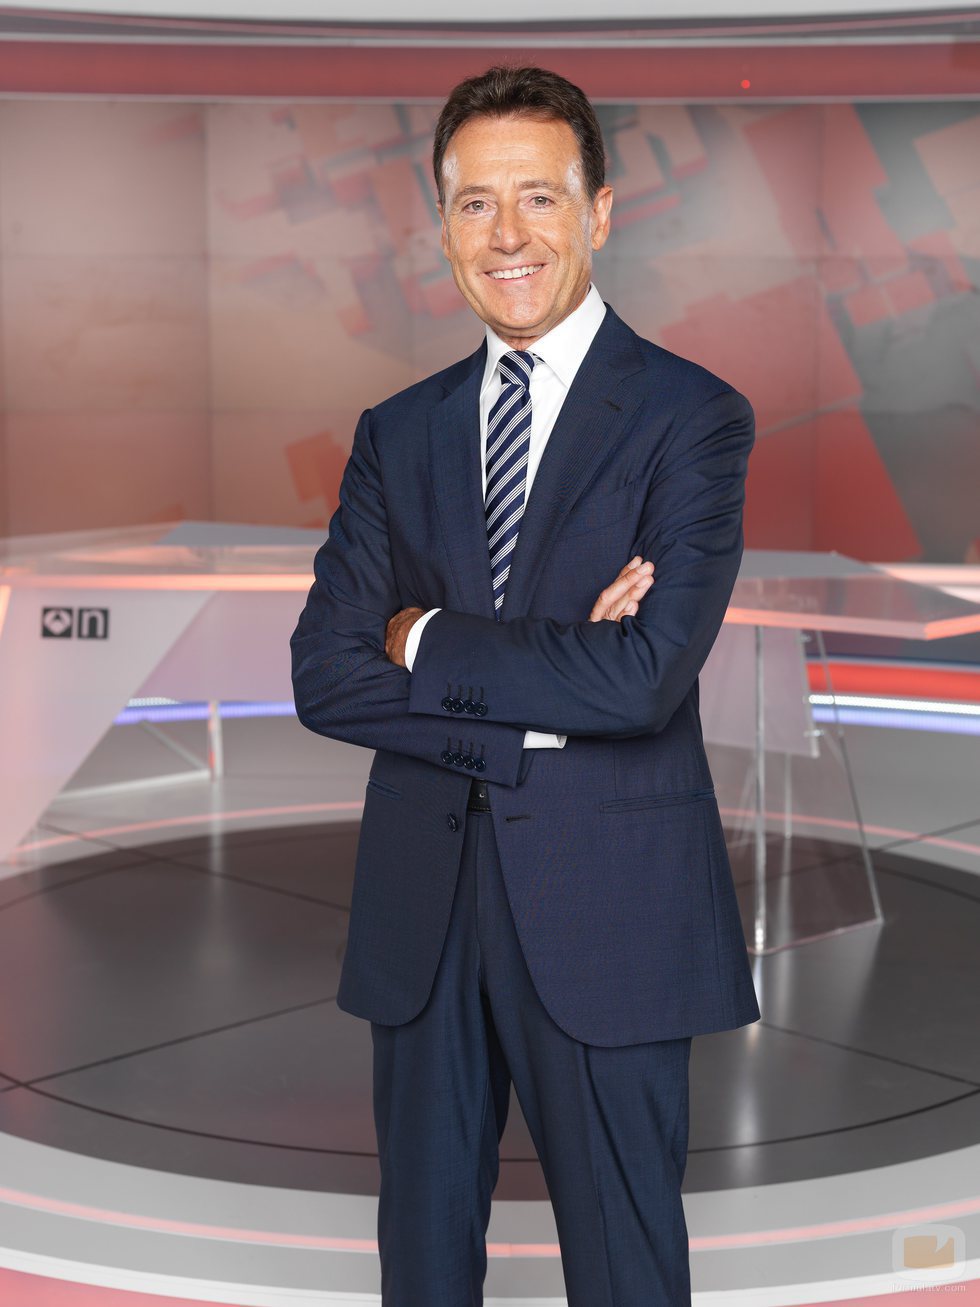 Matías Prats, presentador de 'Antena 3 Noticias fin de semana'